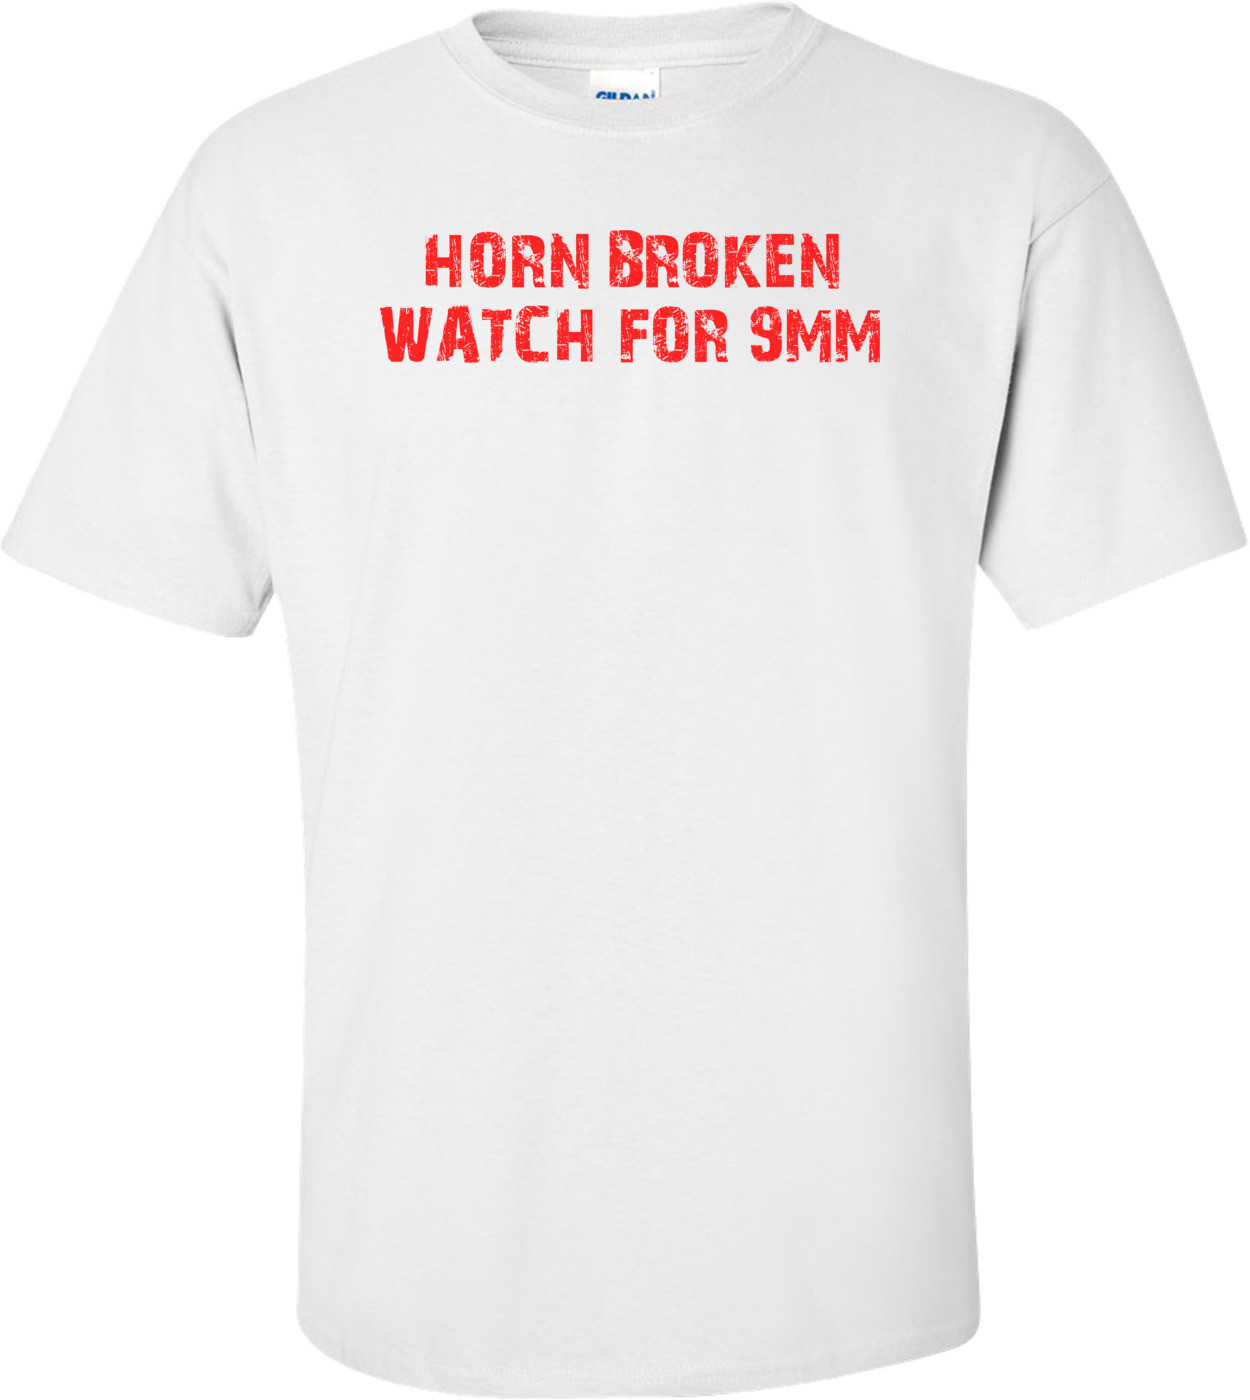 HORN BROKEN WATCH FOR 9MM Shirt